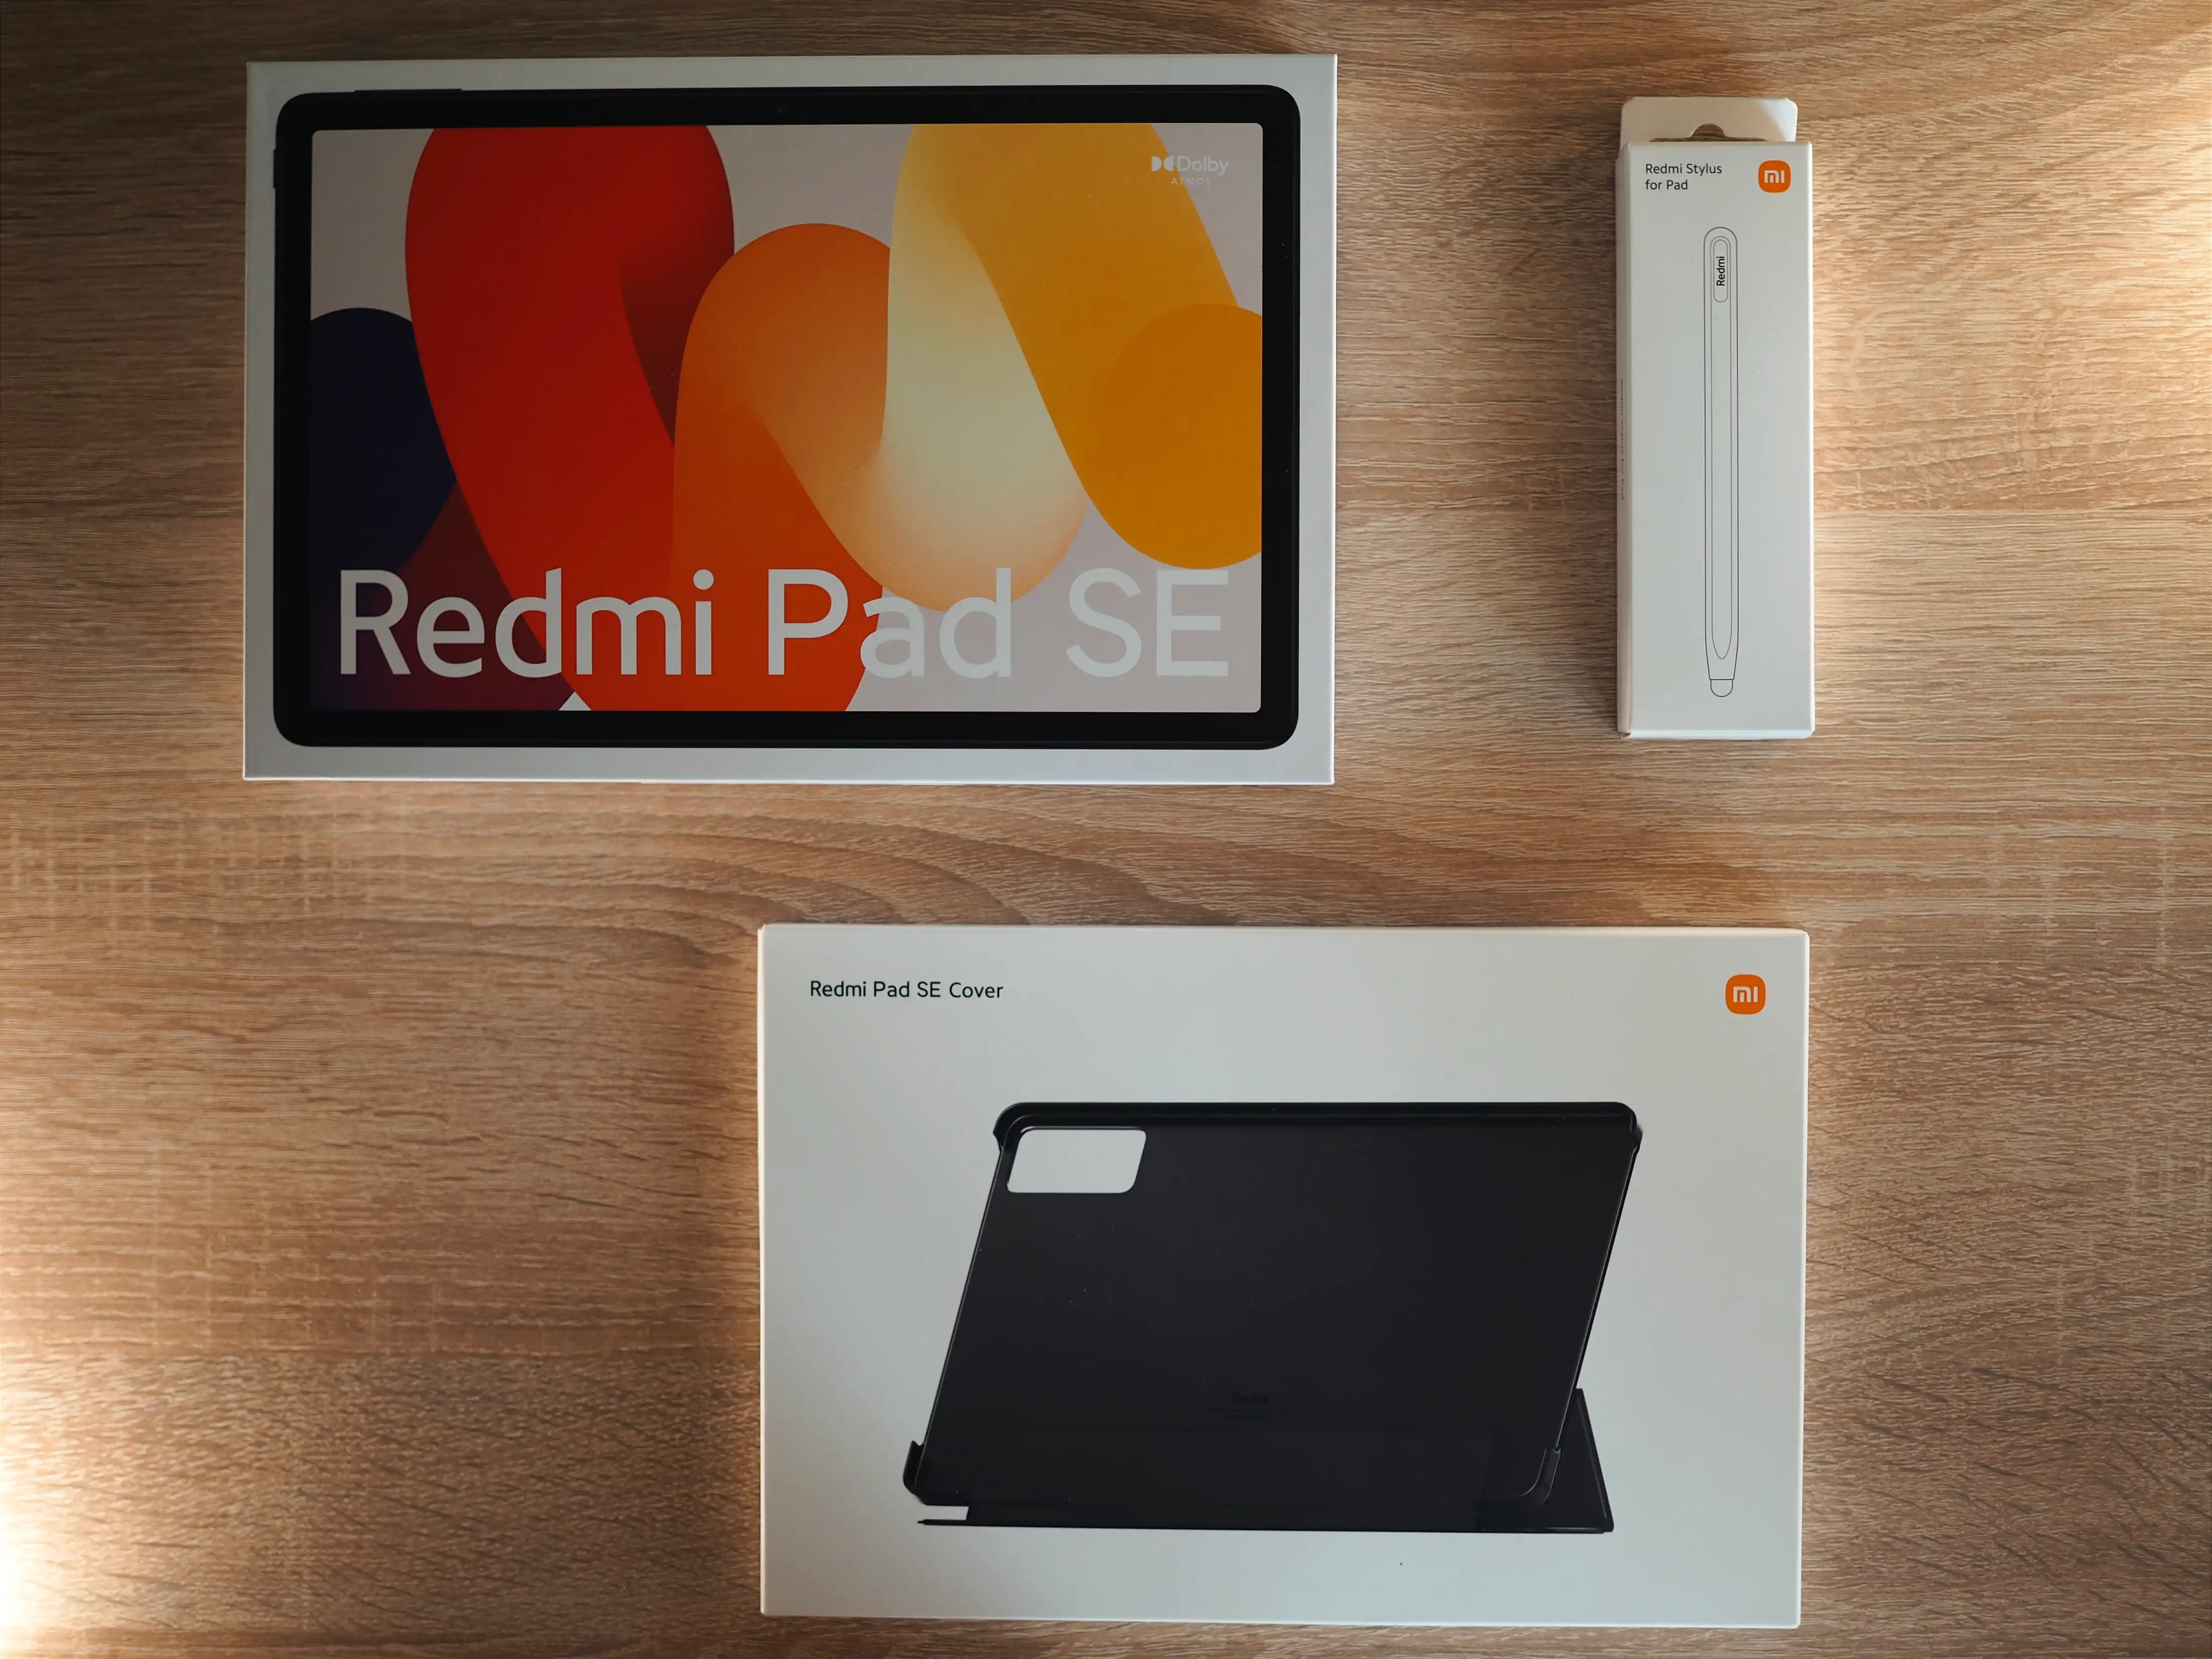 Funda Xiaomi Redmi Pad SE - Compatible - Negro